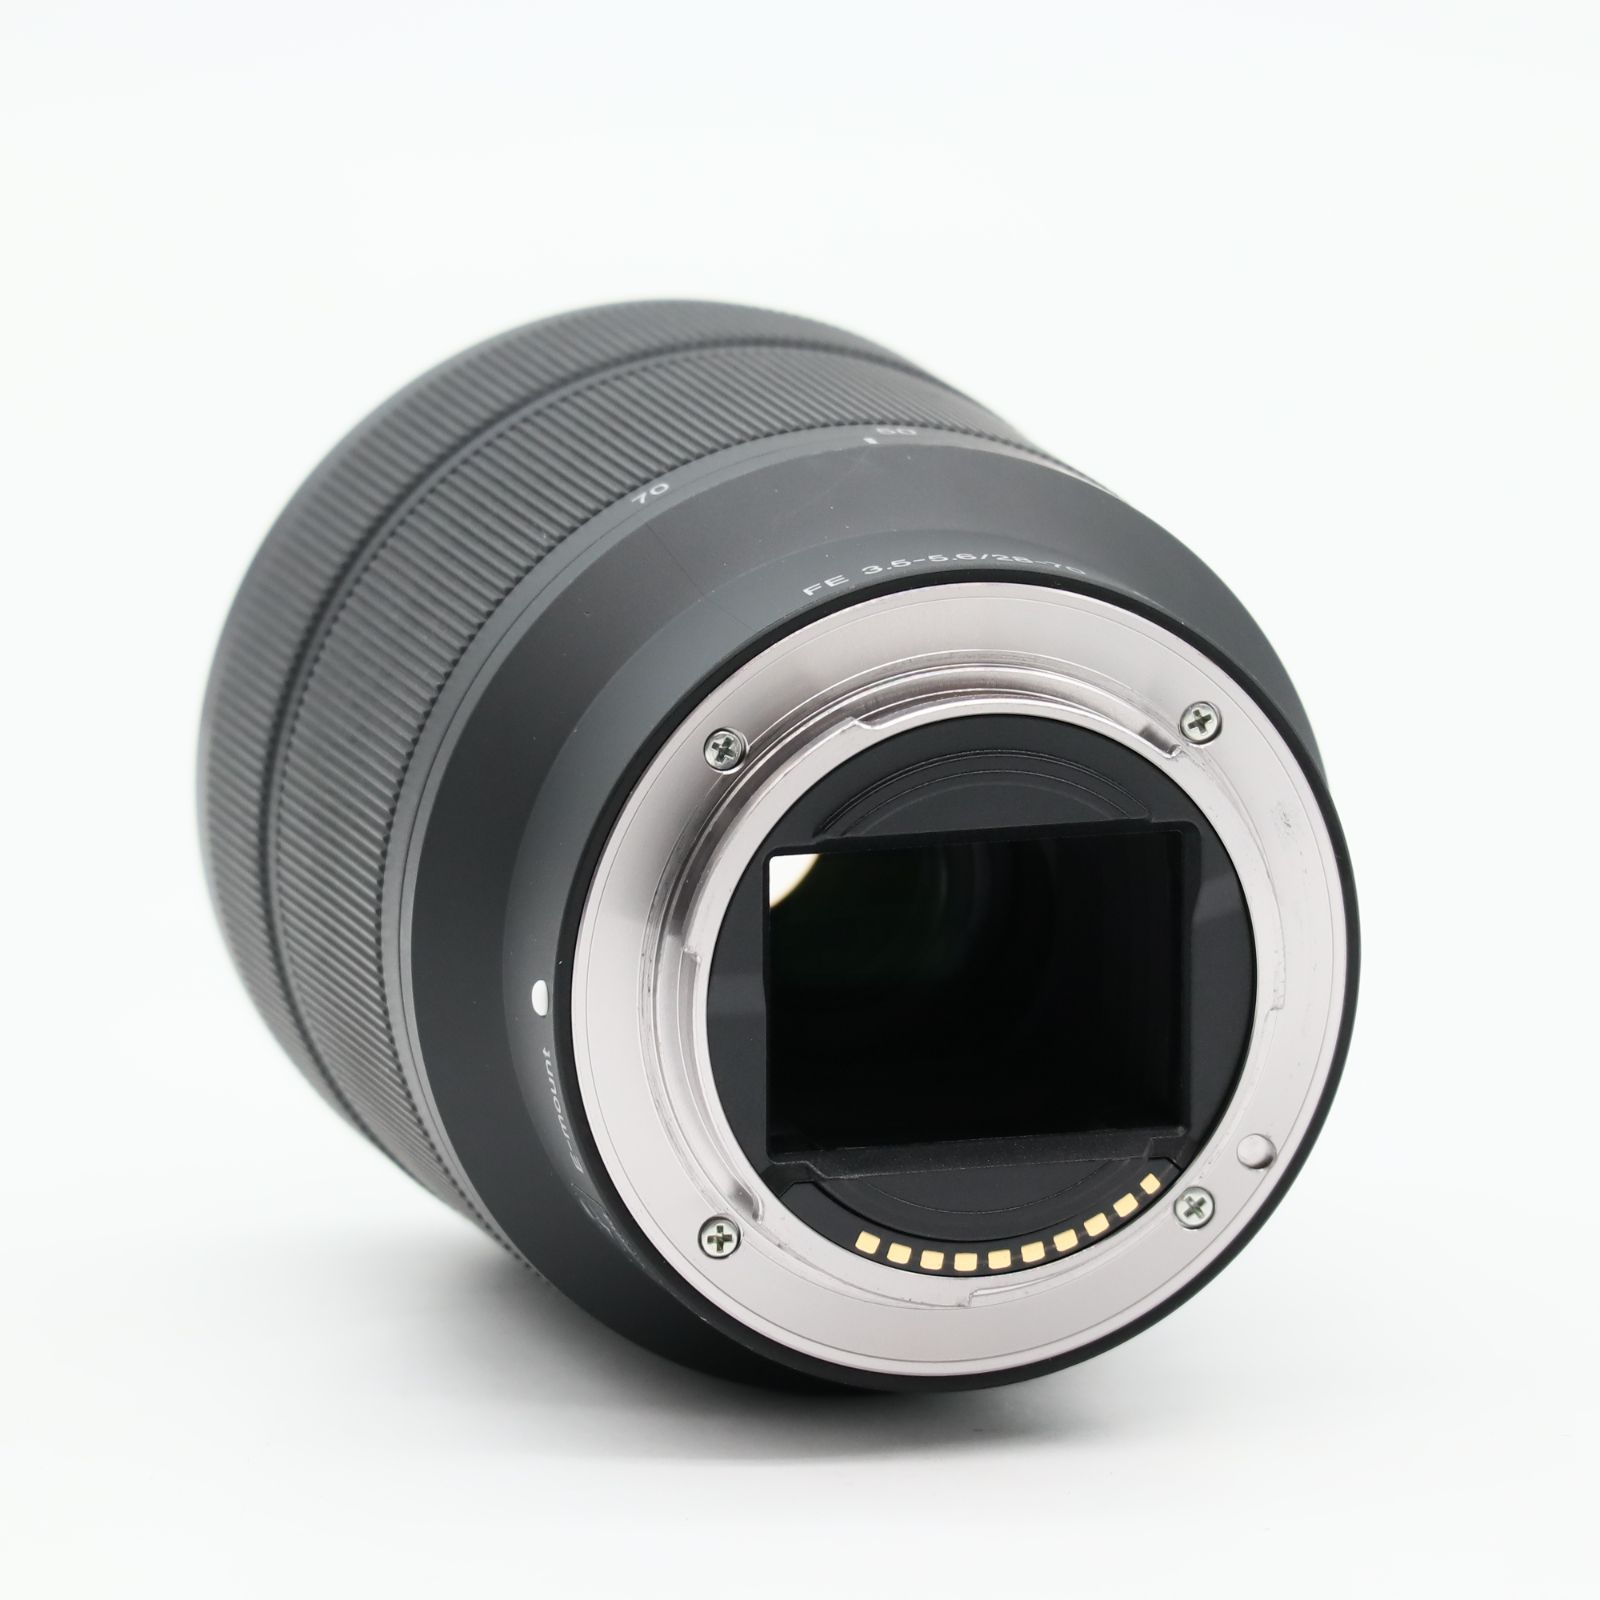 ソニー(SONY) 標準ズームレンズ フルサイズ FE 28-70mm F3.5-5.6 OSS デジタル一眼カメラα[Eマウント]用 純正レンズ  SEL2870 #3395 - メルカリ